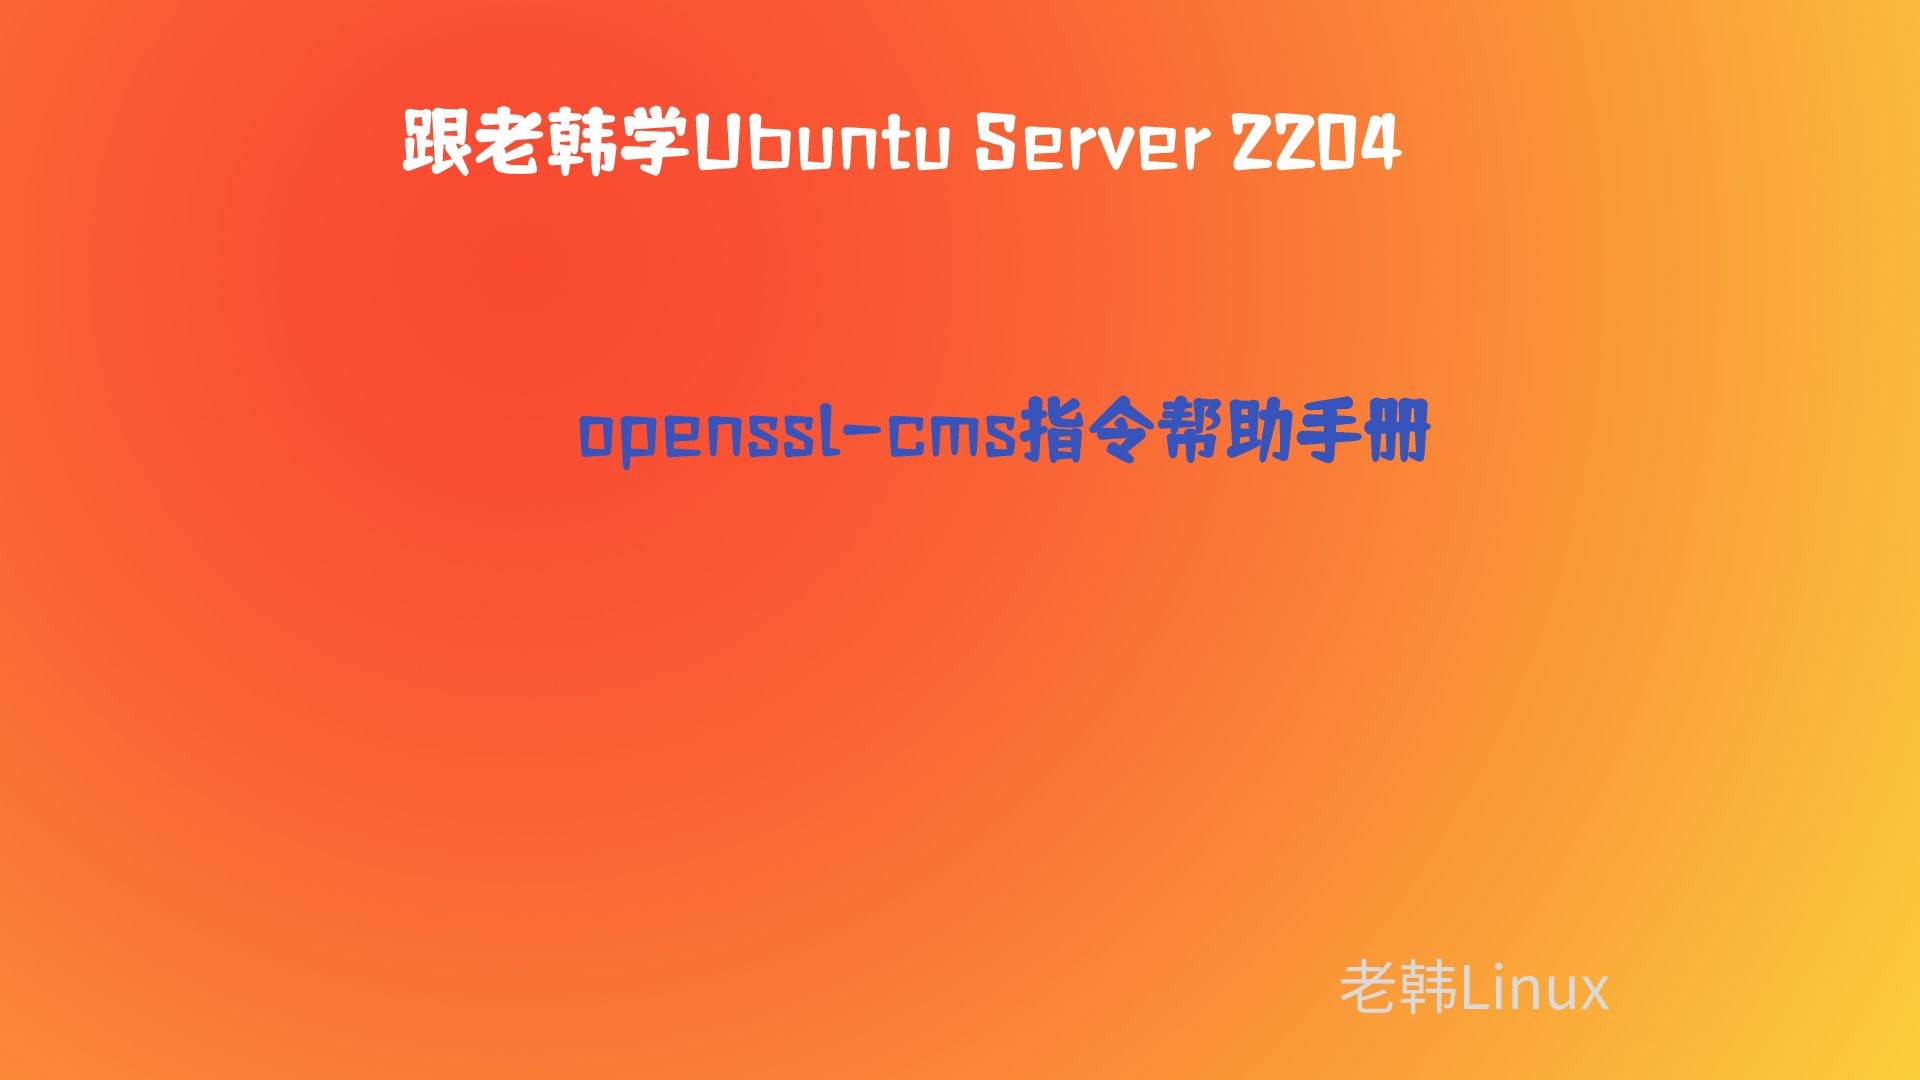 跟老韩学Ubuntu Server 2204-openssl-cms帮助手册